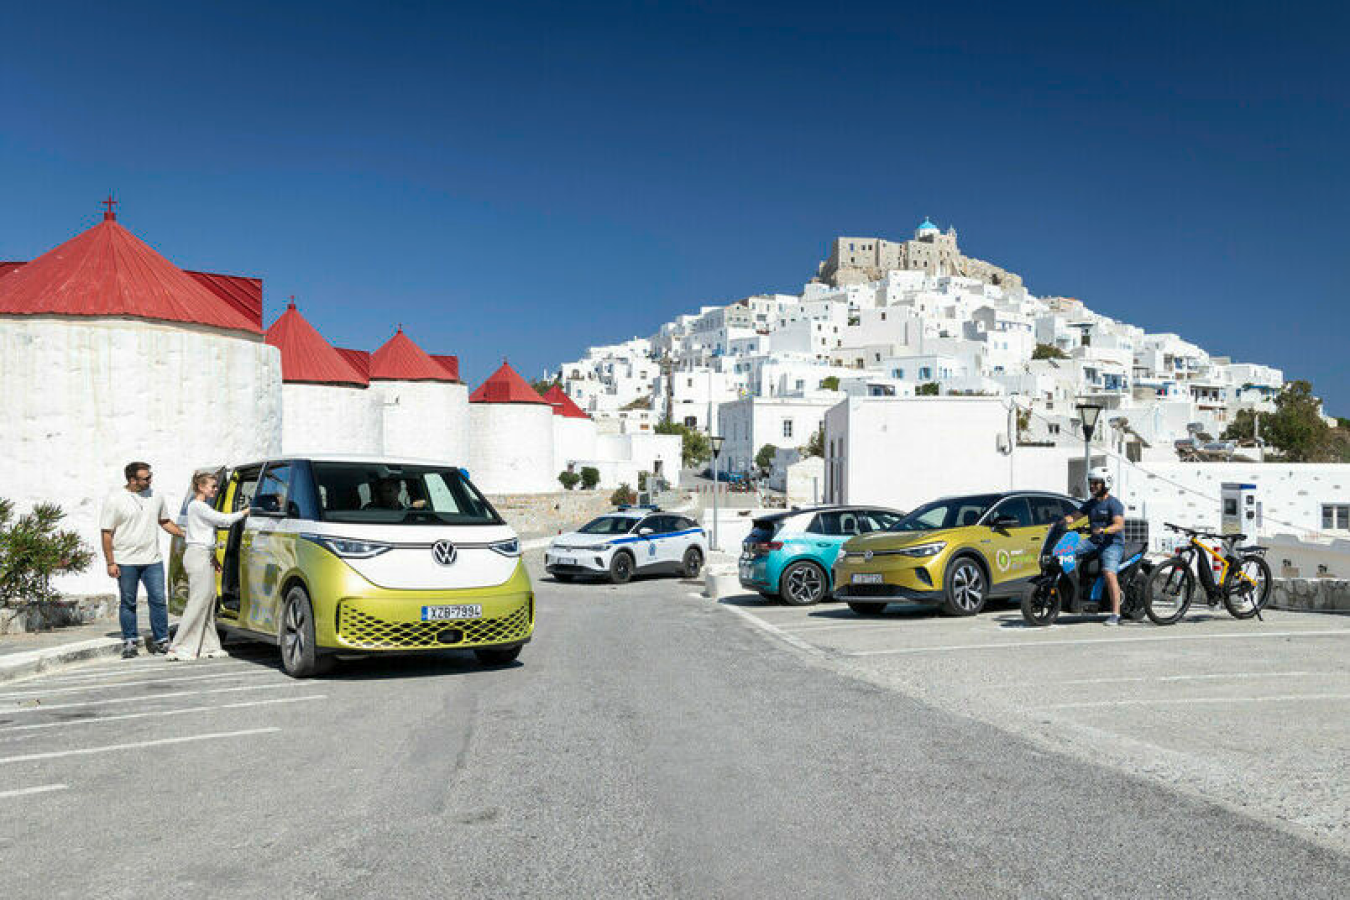 Eine bunte Gruppe von Fahrzeugen und Menschen auf einer Straße auf einer griechischen Insel. Im Vordergrund ein gelber Volkswagen Bus